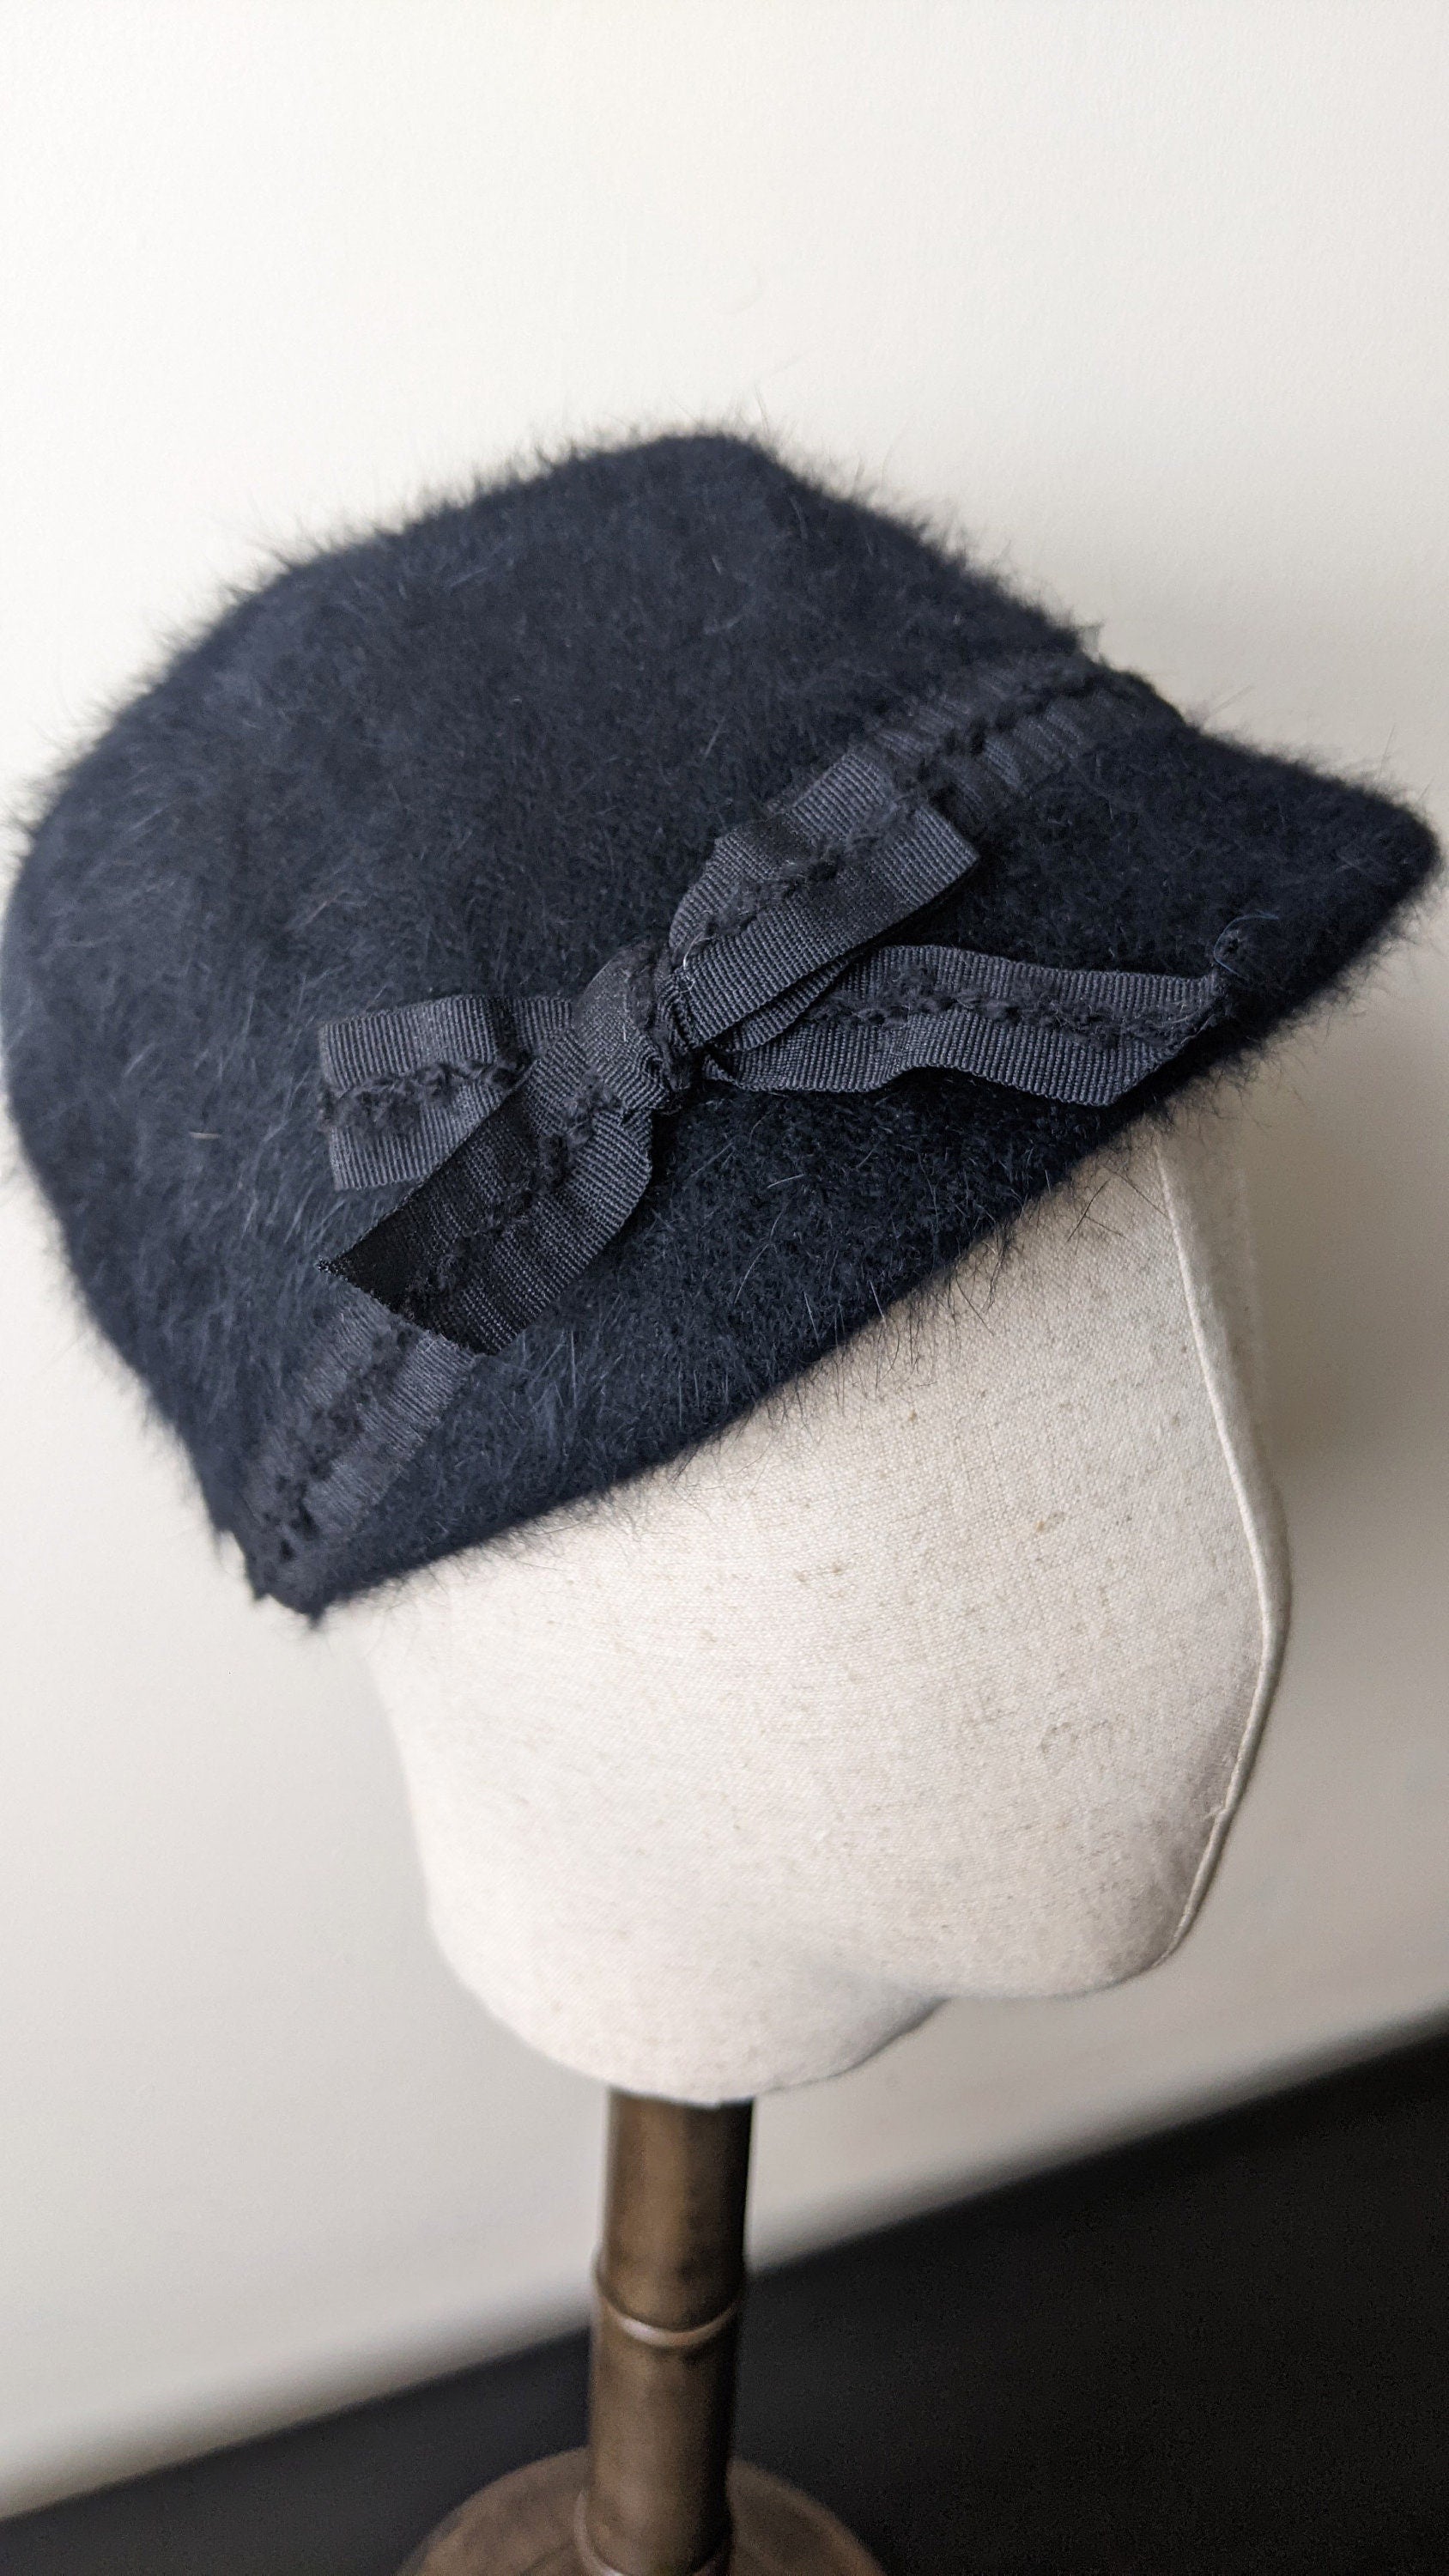 90s Angora Fur Cloche Hat by Loevenich, Fluffy Winter Headwear, Size Small